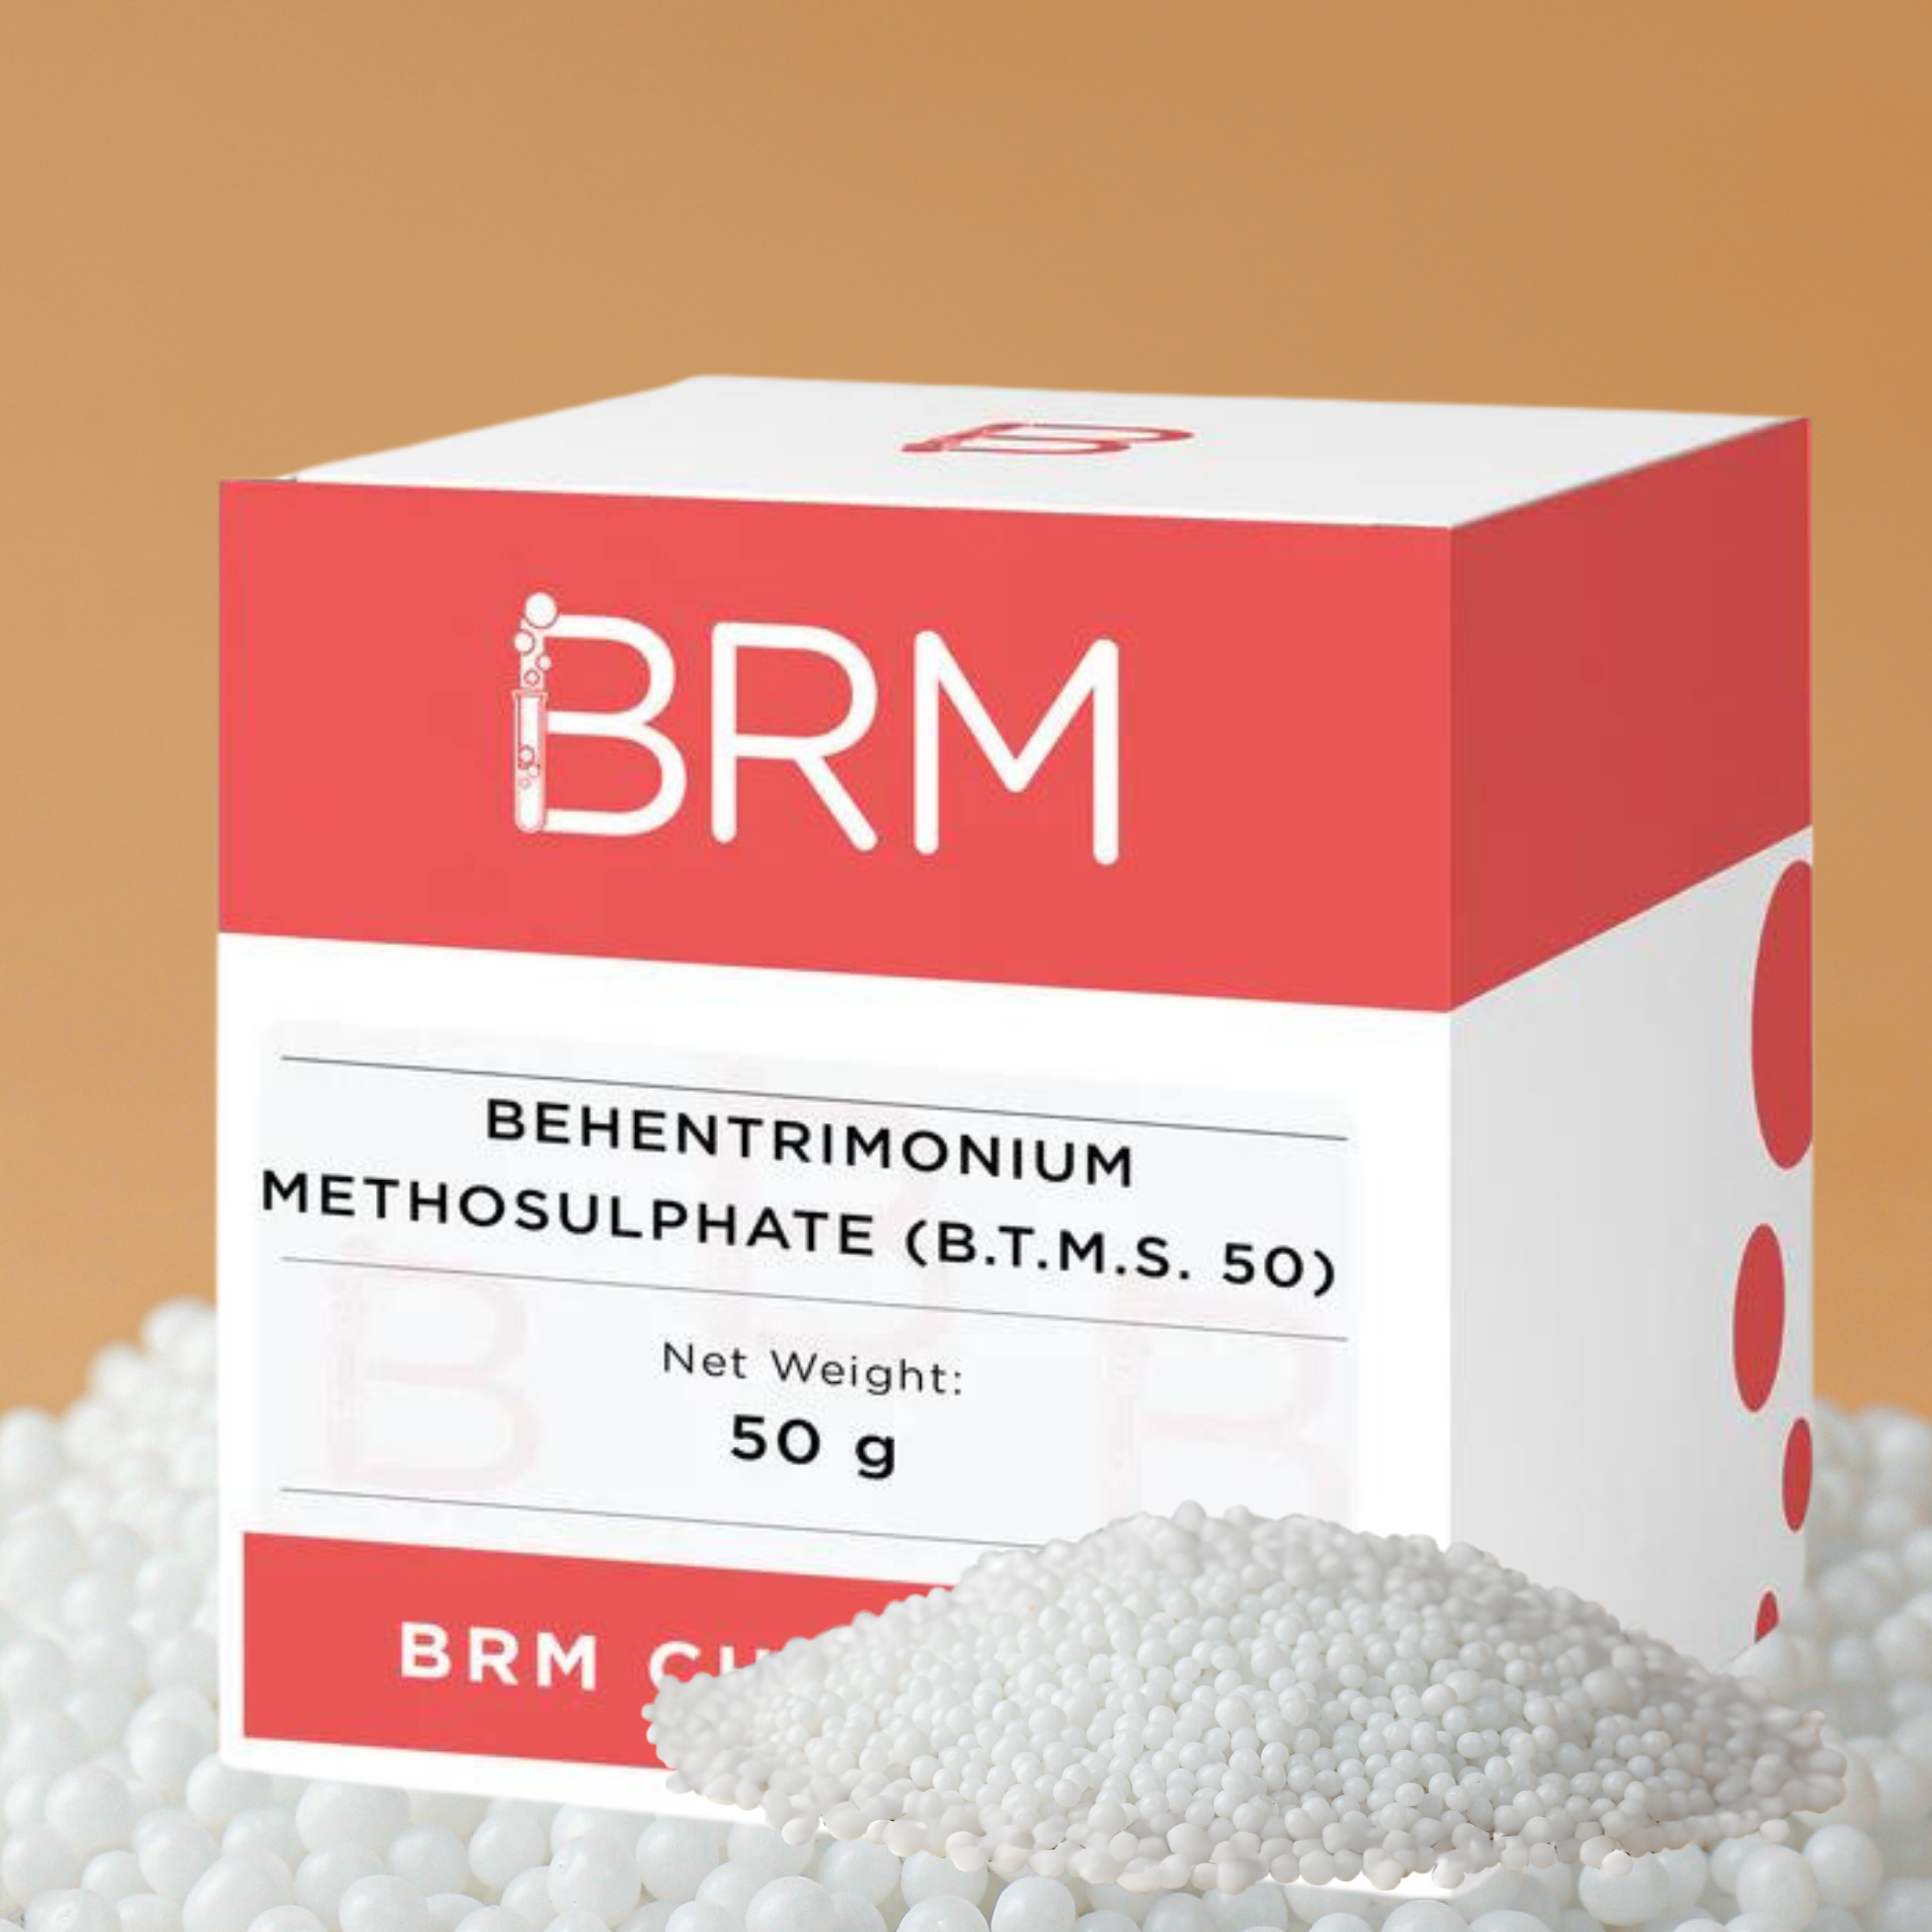 BTMS-50, Behentrimonium Methosulfate – Formulator Supplies